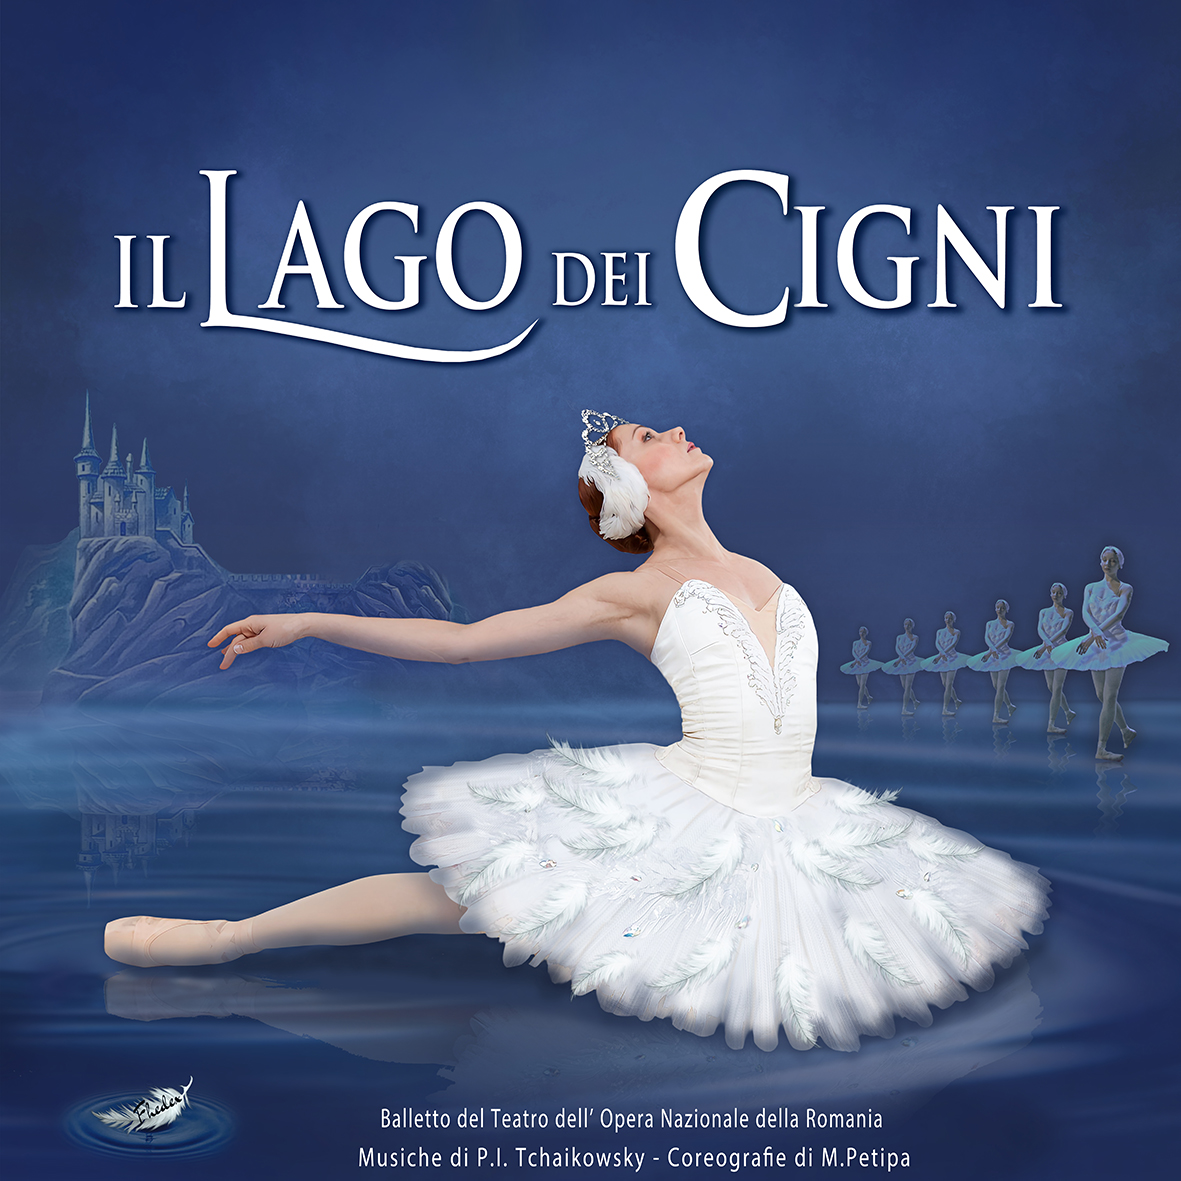 Il Lago dei Cigni del Balletto dell’Opera di Iasi a Catania